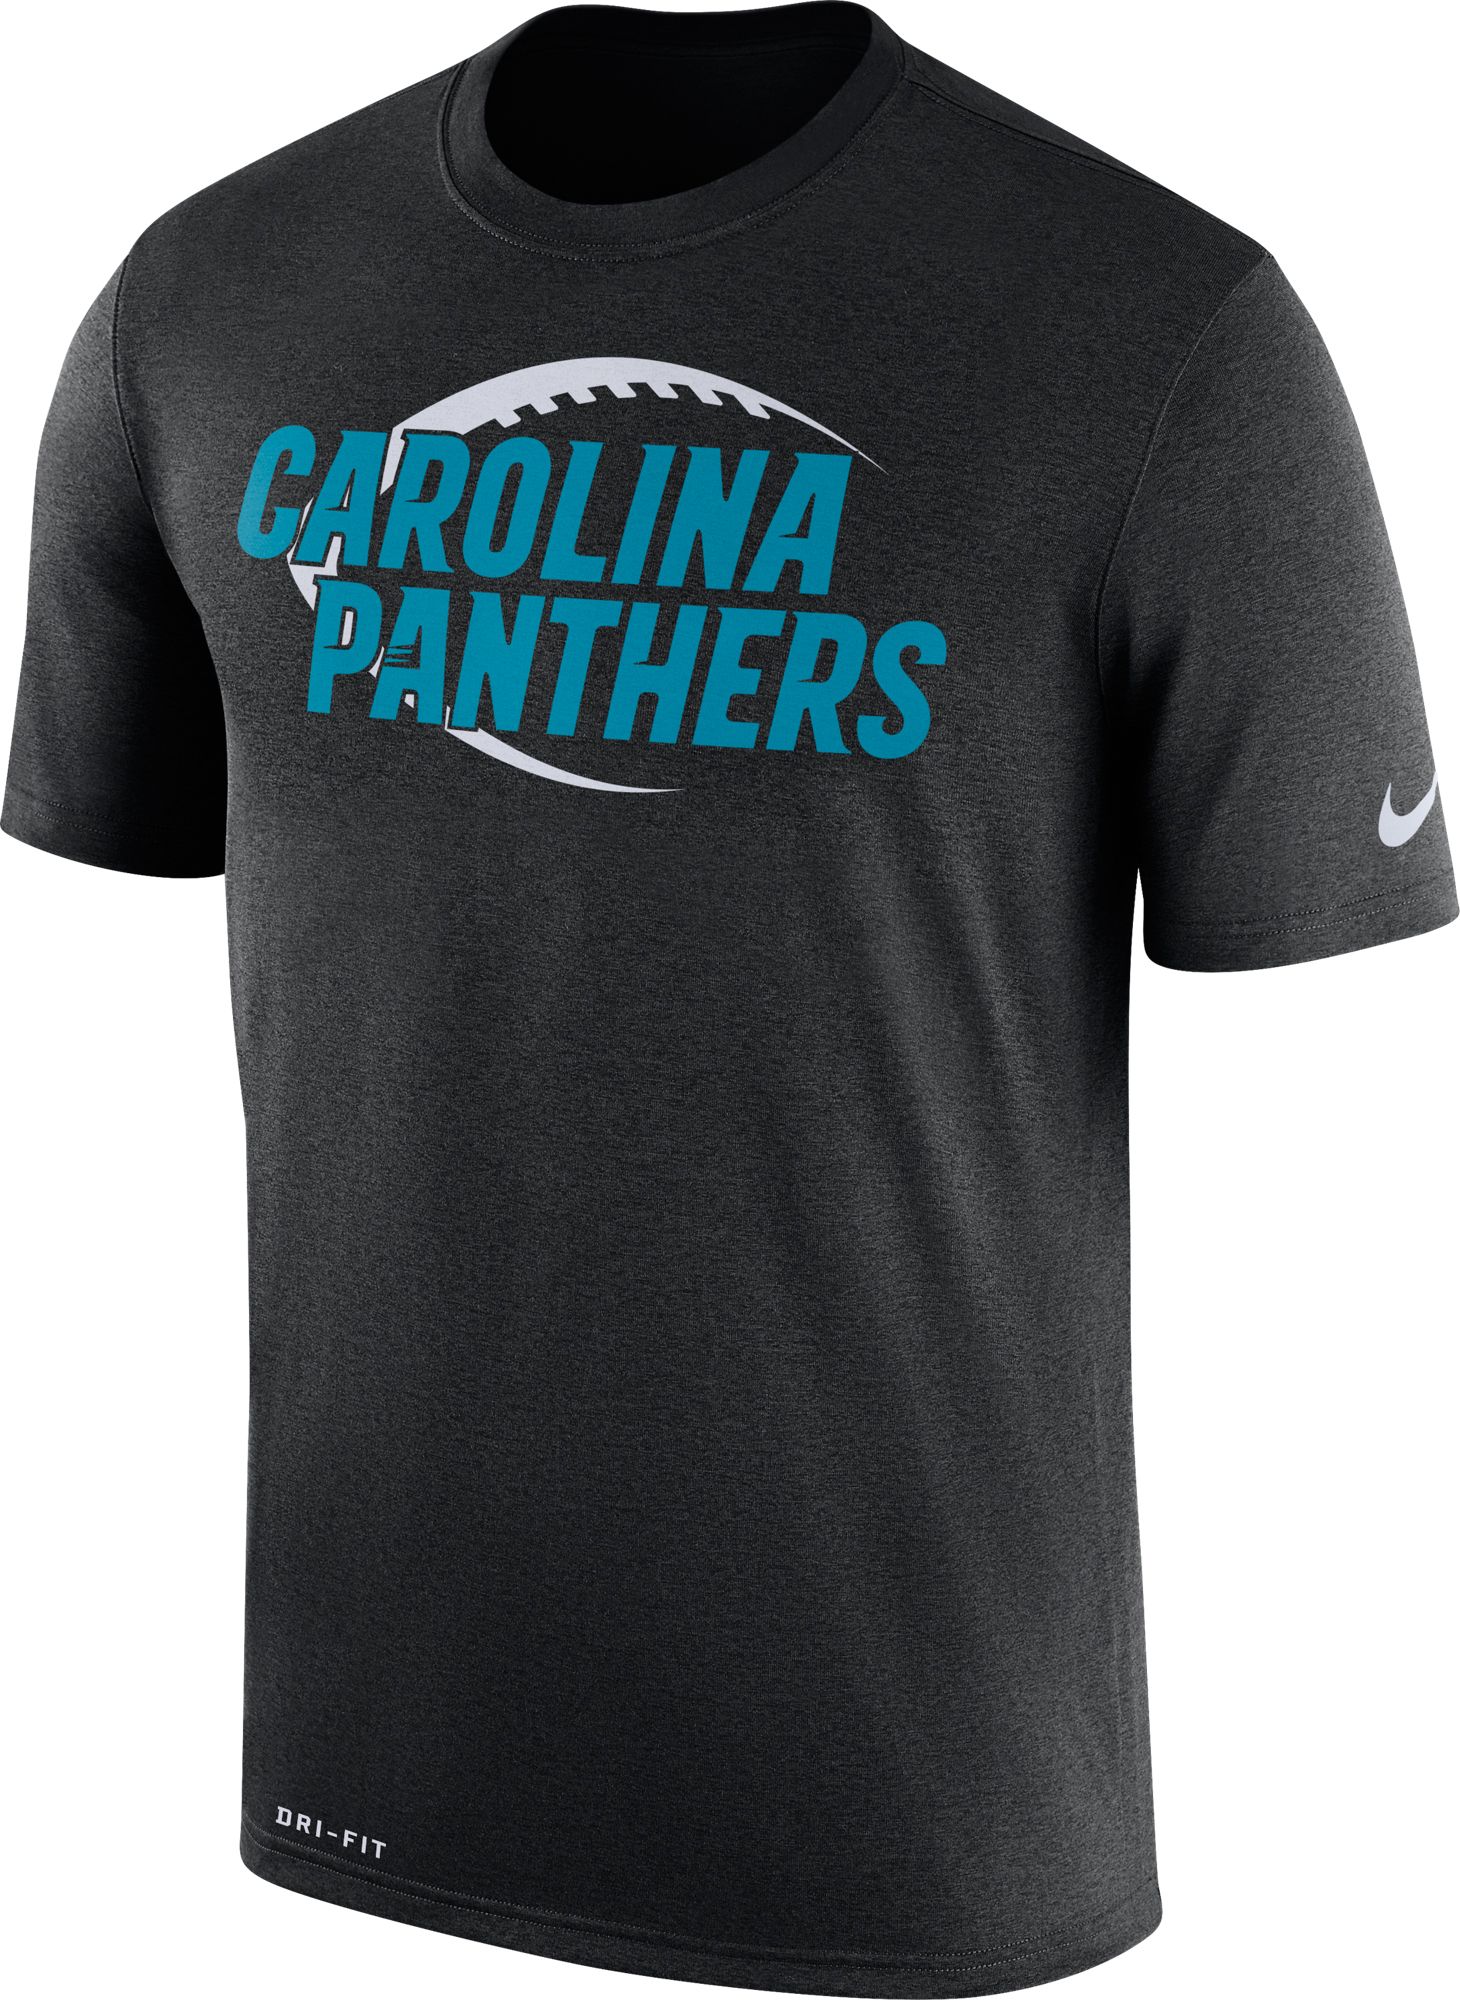 Carolina Panthers Apparel & Gear | DICK'S Sporting Goods